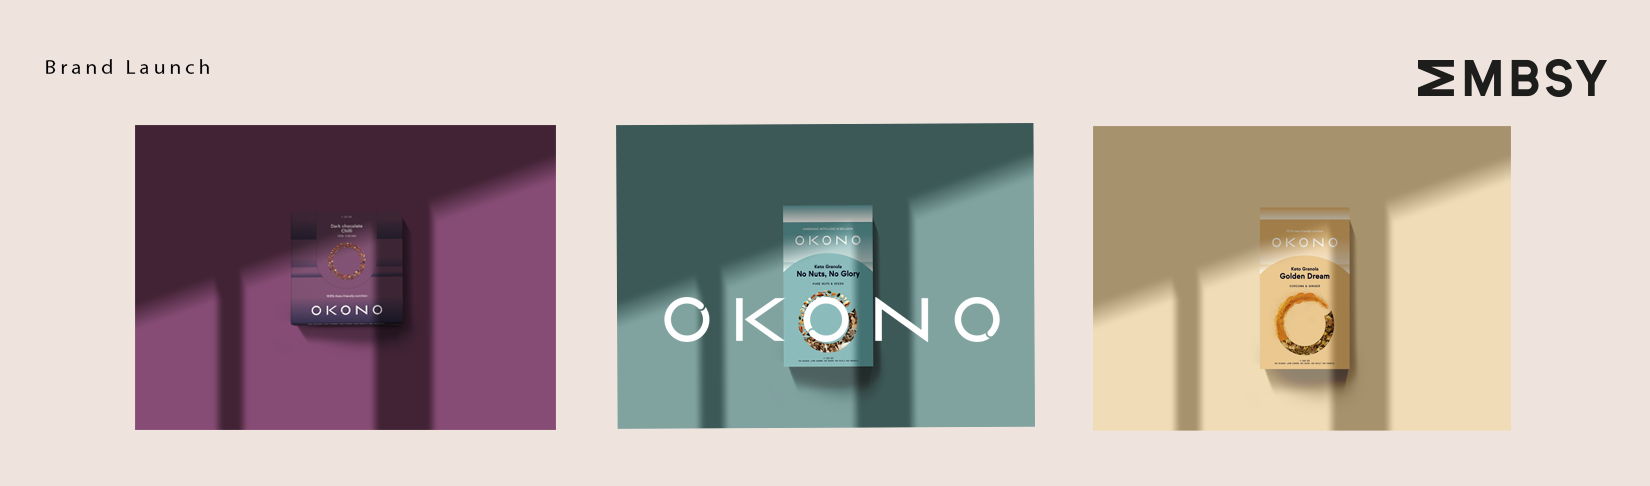 Profiter sainement de la vie grâce à OKONO